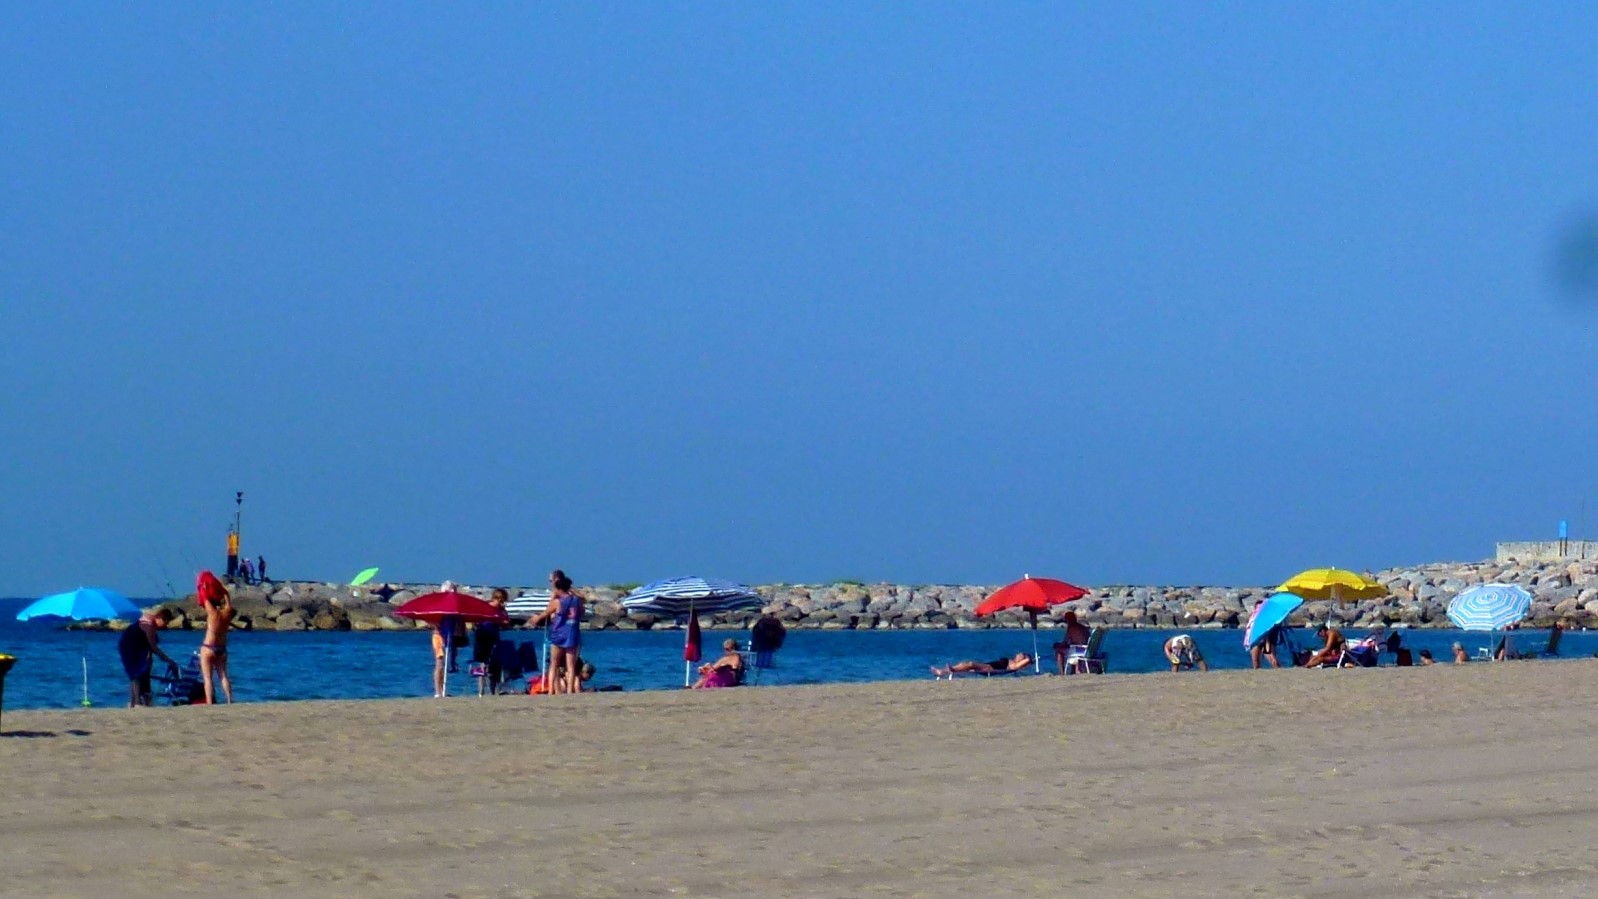 Castelldefels beach, Spain.